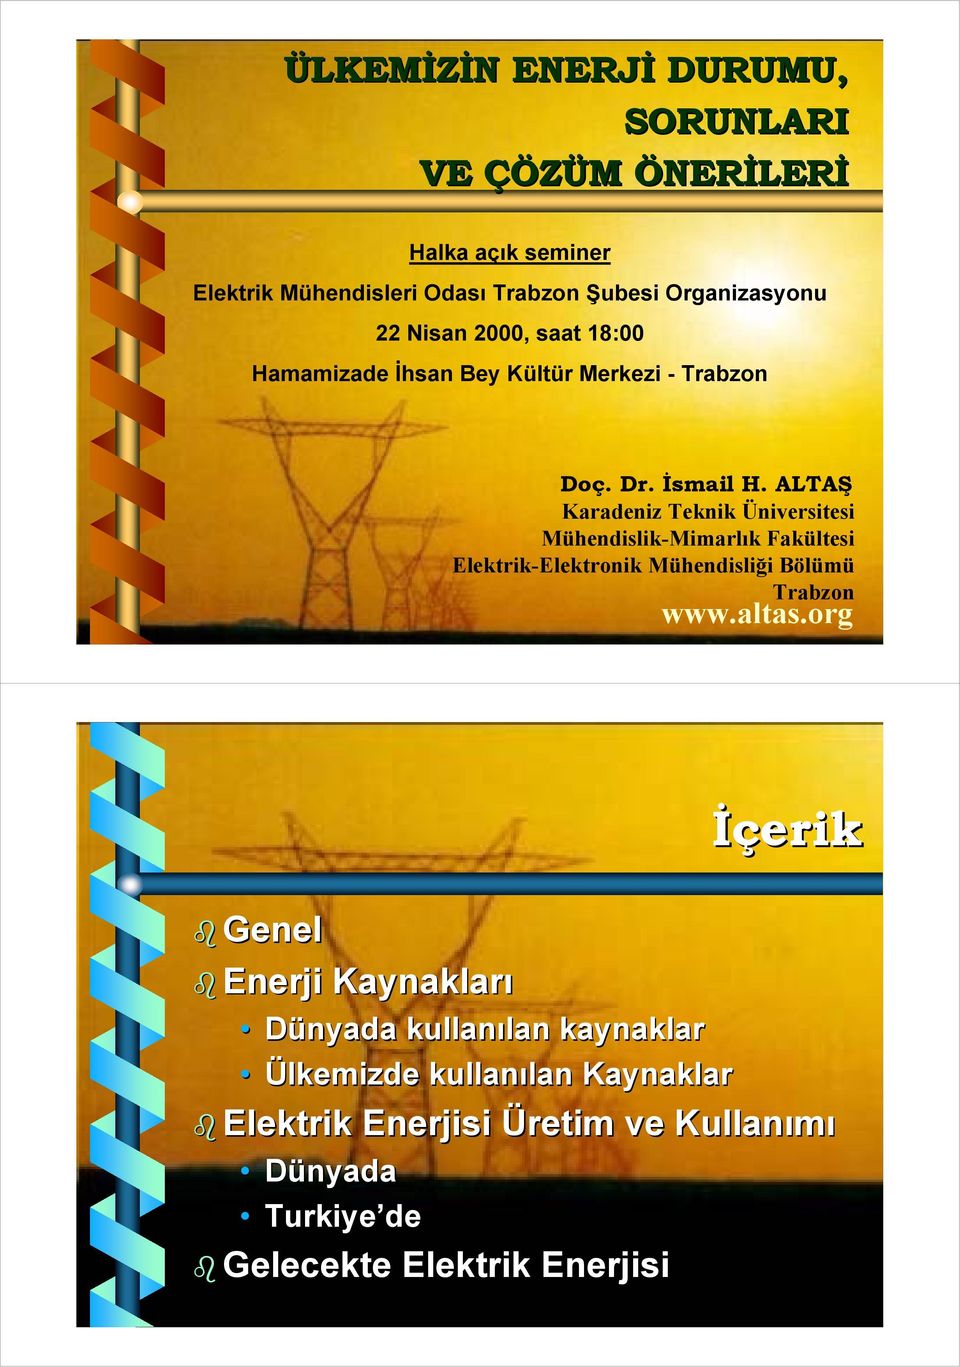 ALTAŞ Karadeniz Teknik Üniversitesi Mühendislik-Mimarlık Fakültesi Elektrik-Elektronik Mühendisliği Bölümü Trabzon www.altas.